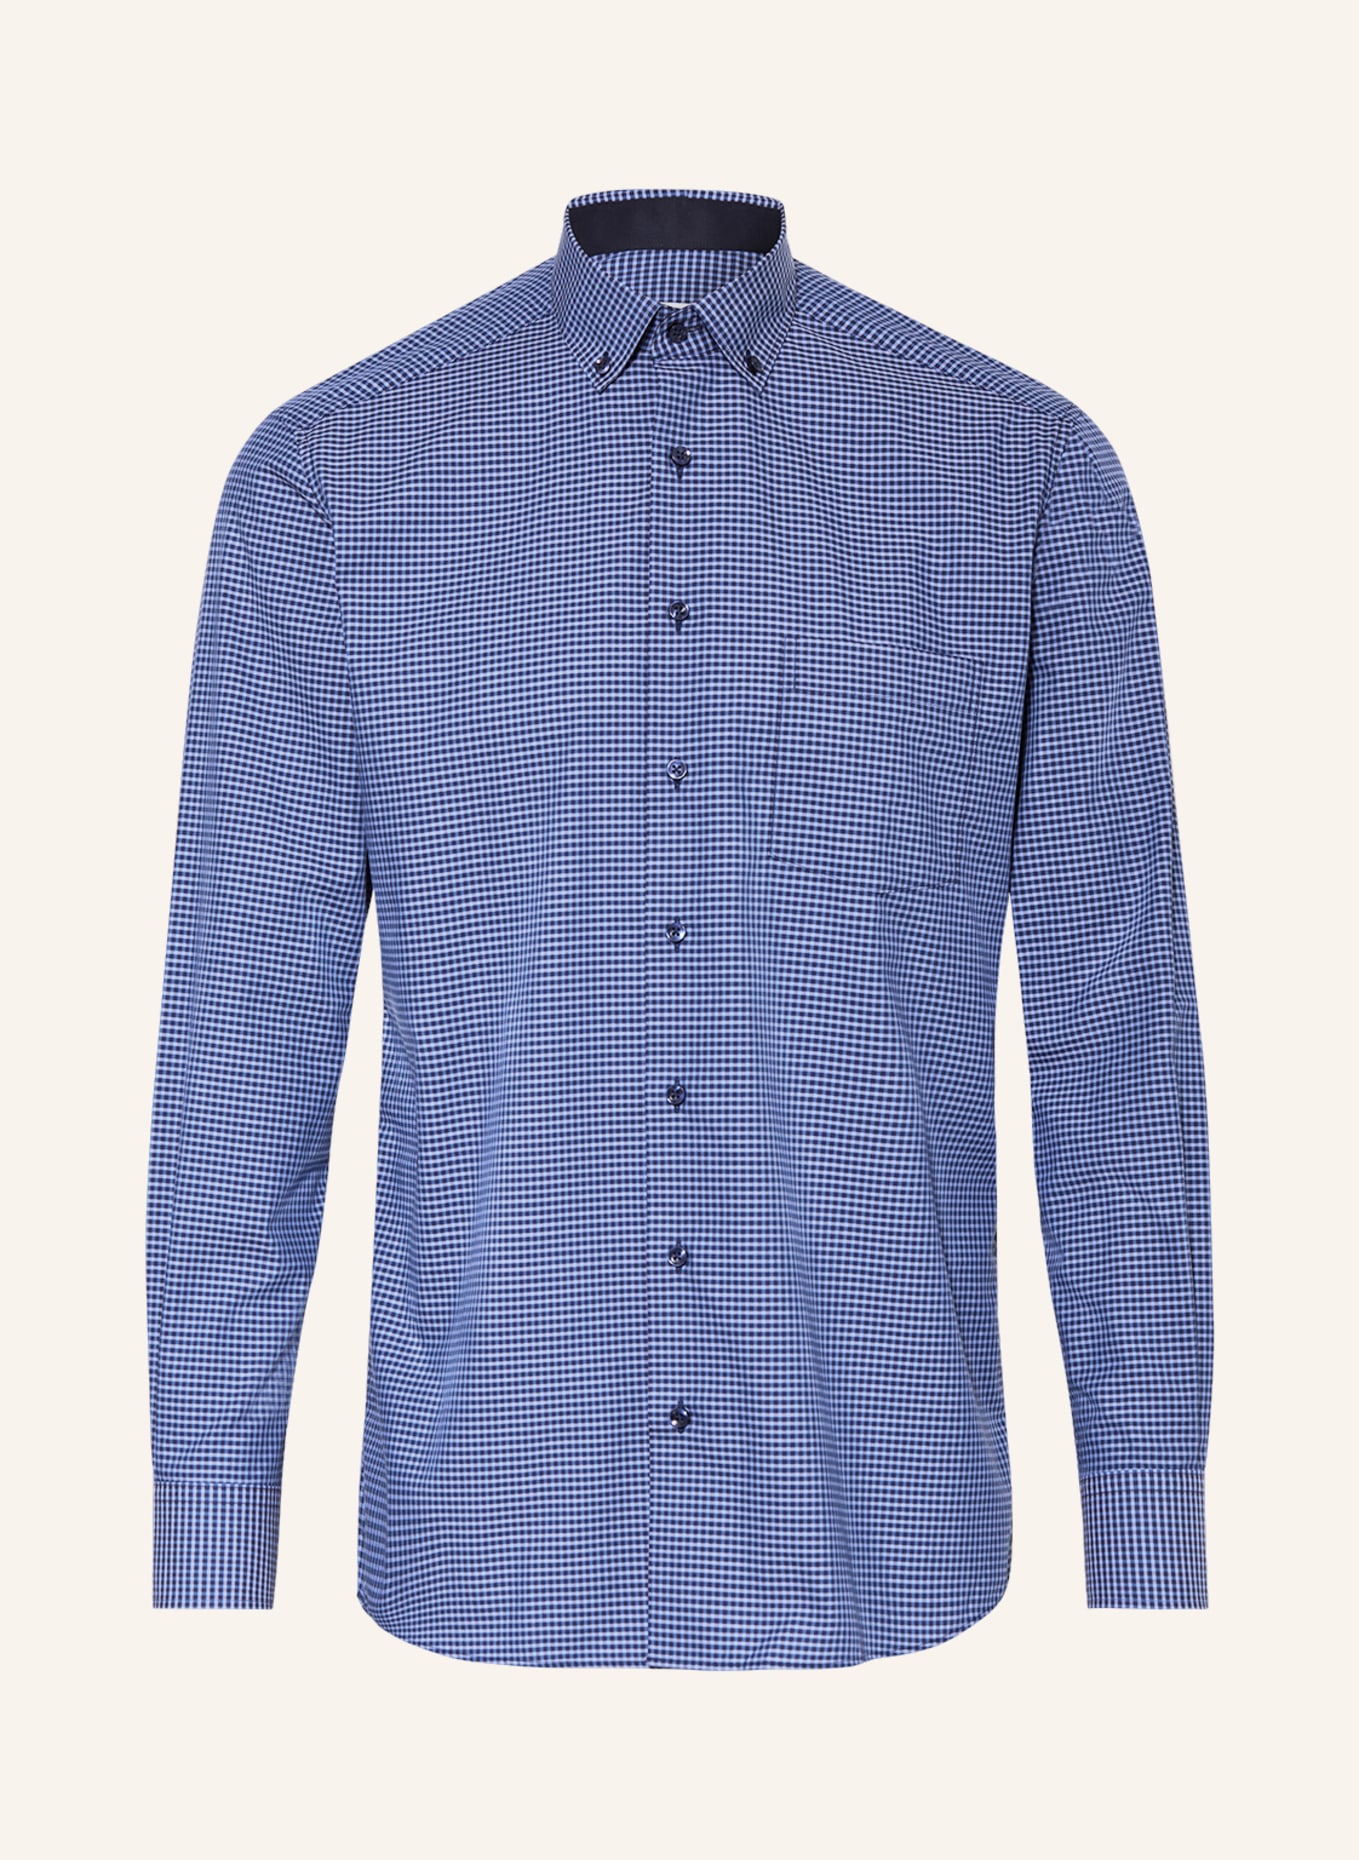 ETERNA Shirt modern fit, Color: DARK BLUE/ BLUE (Image 1)